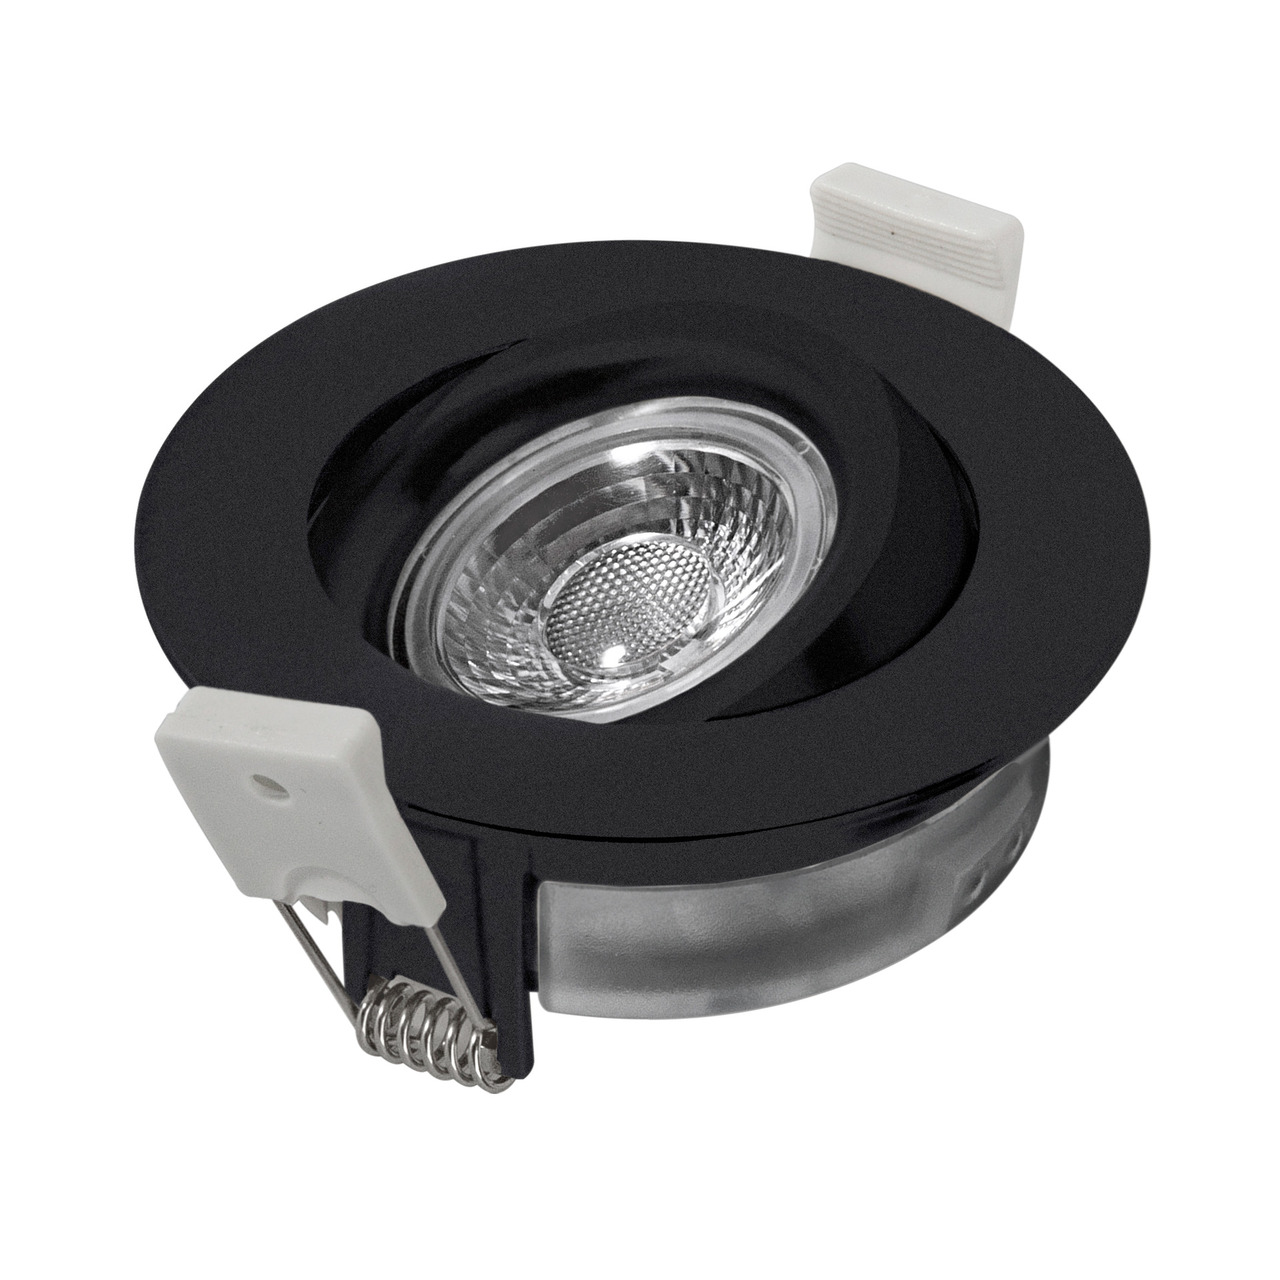 HEITRONIC 7-W-LED-Einbaustrahler DL6809- dimmbar- schwenk- und drehbar- IP44- schwarz unter Beleuchtung